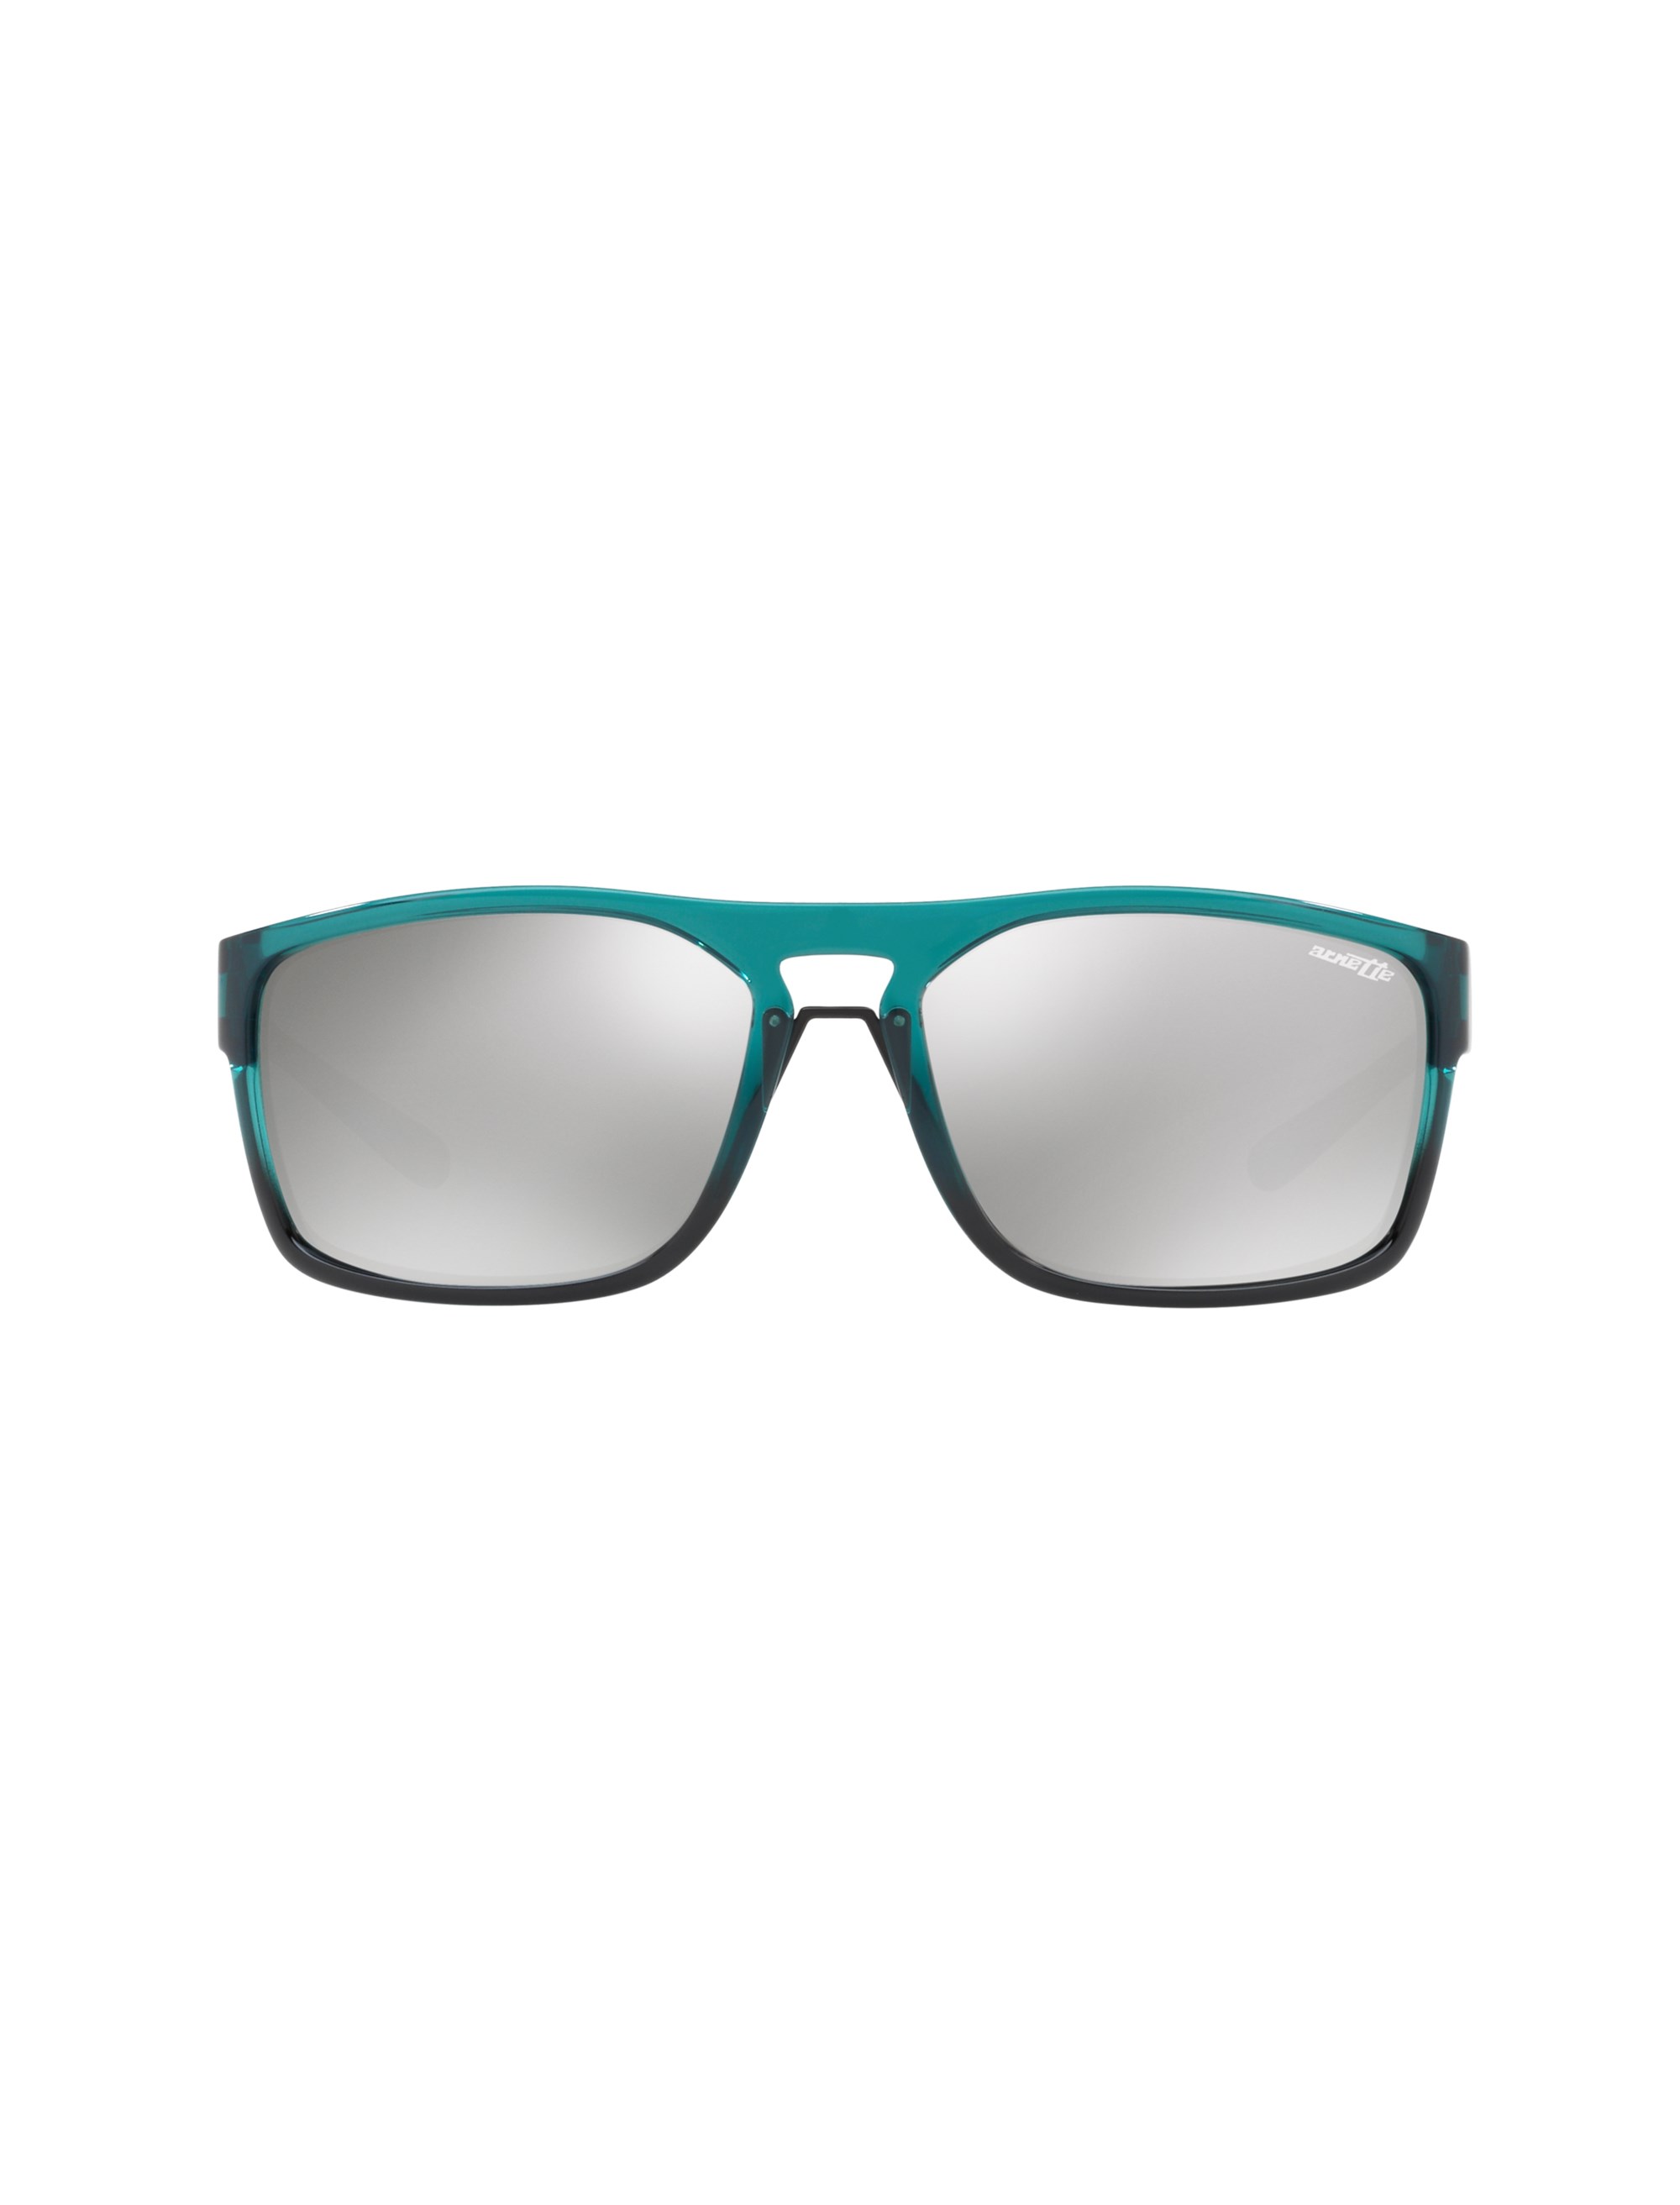 عینک آفتابی مستطیلی مردانه - آرنت - سبز آبي - 2